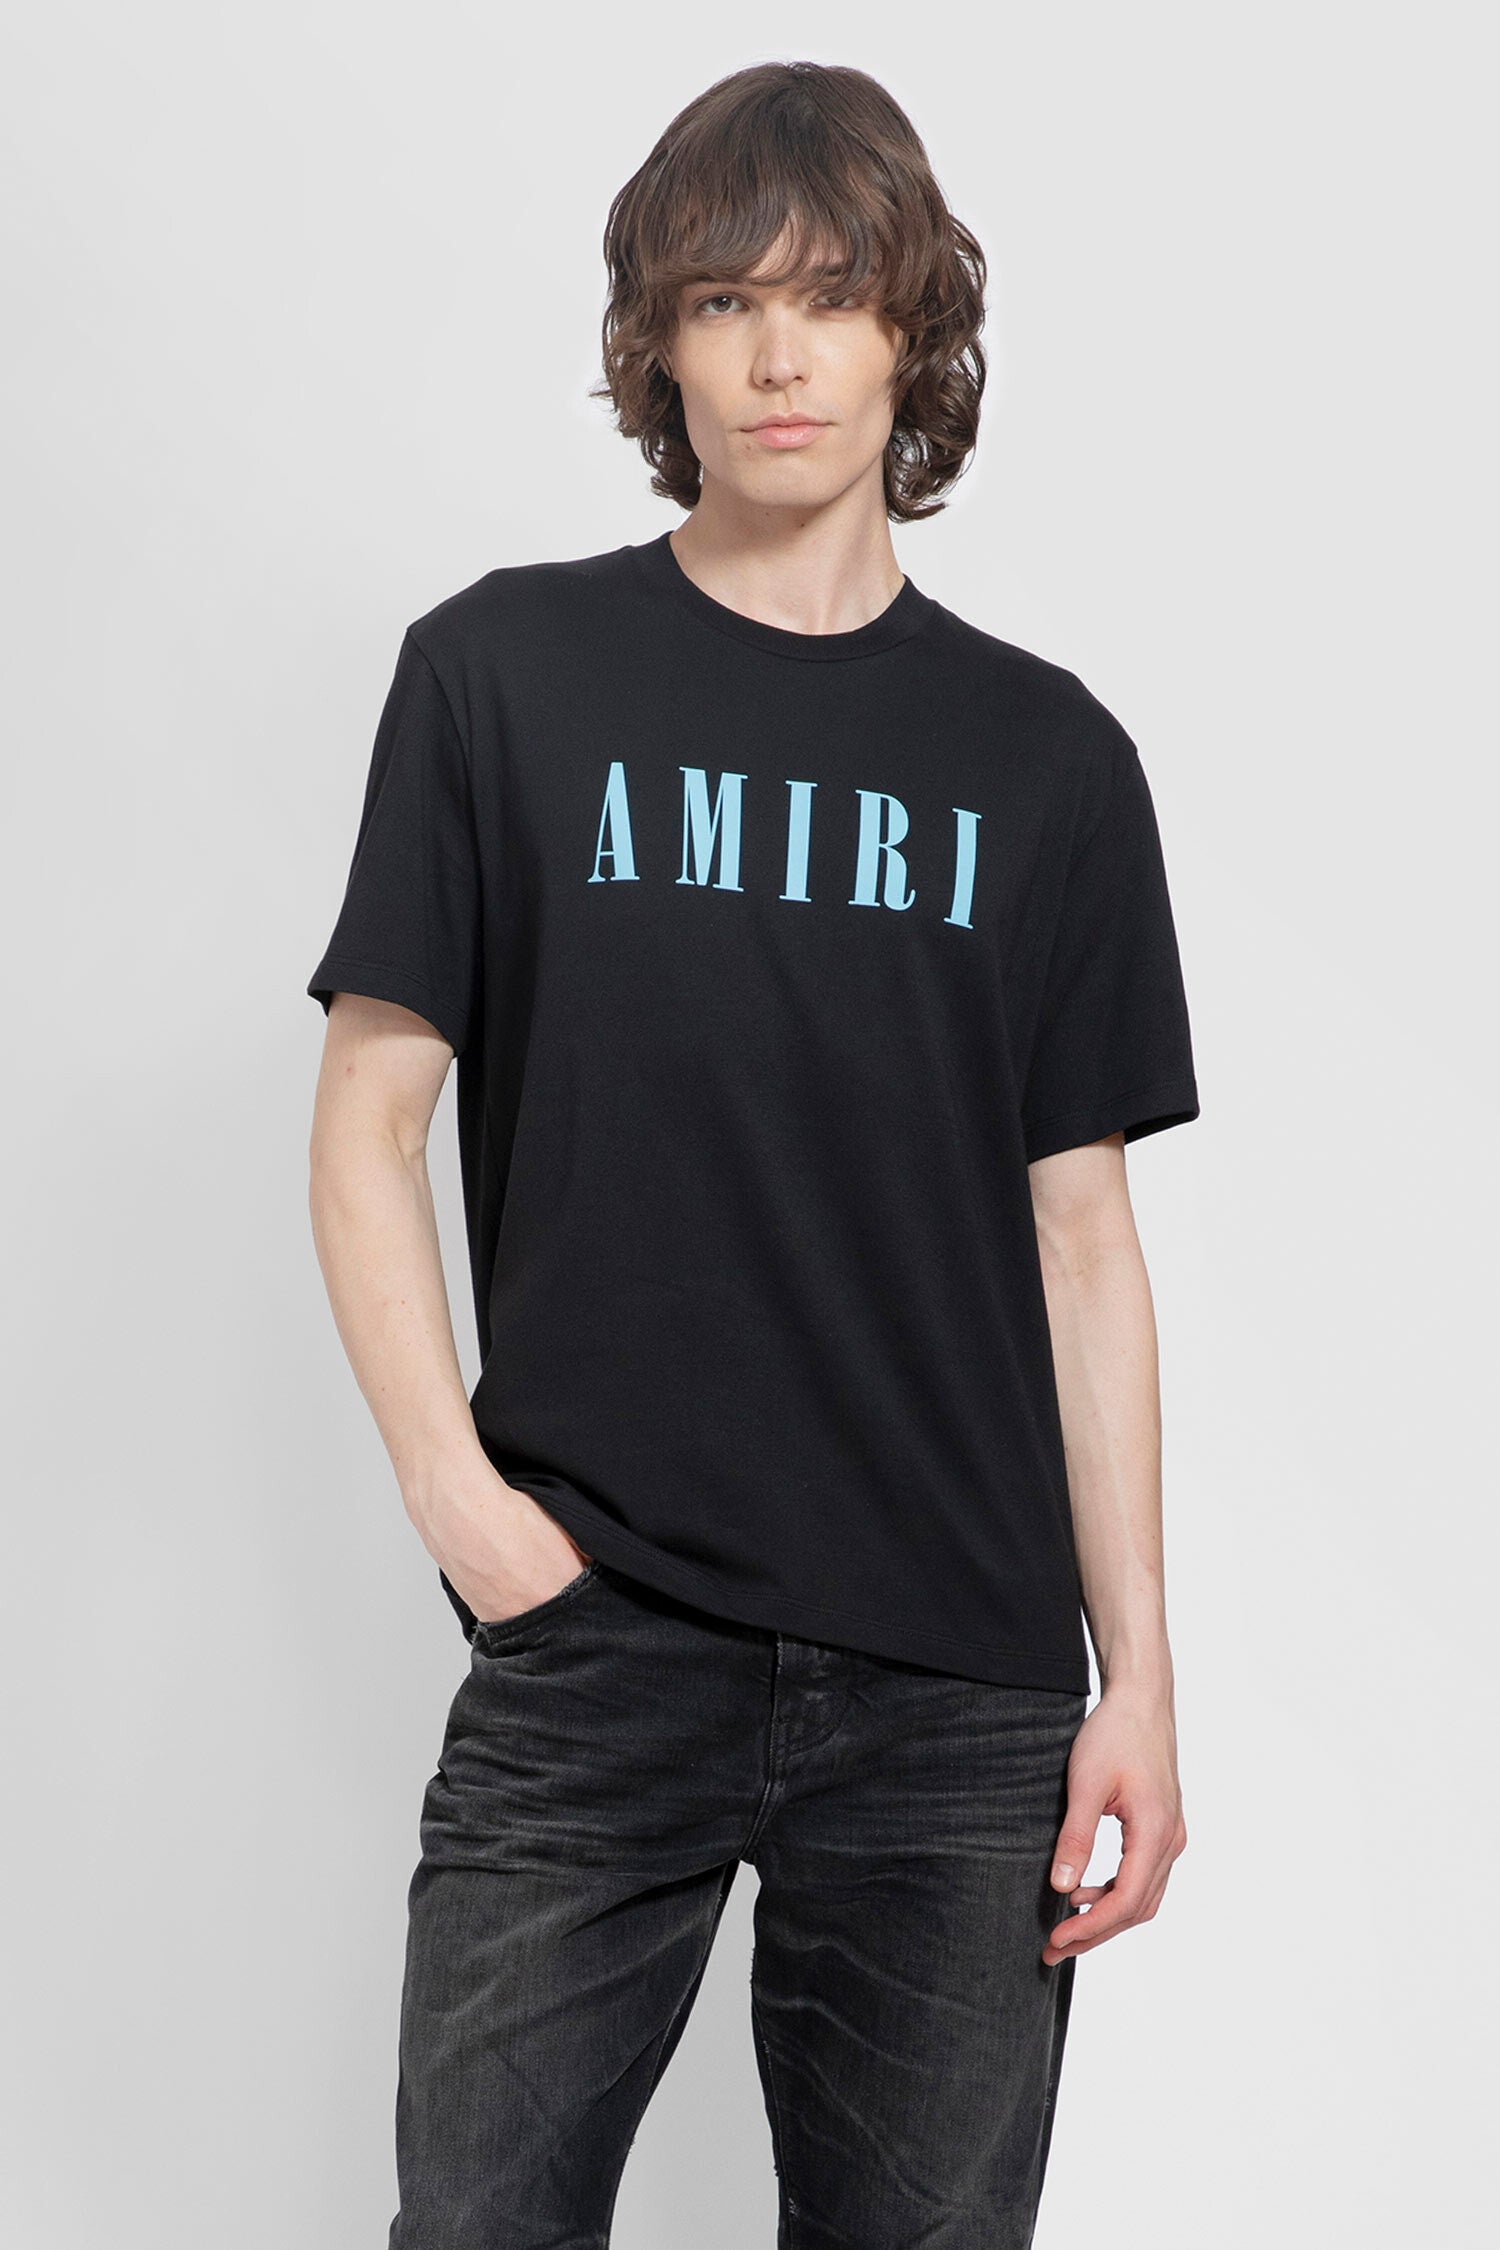 AMIRI MAN BLACK T-SHIRTS & TANK TOPS